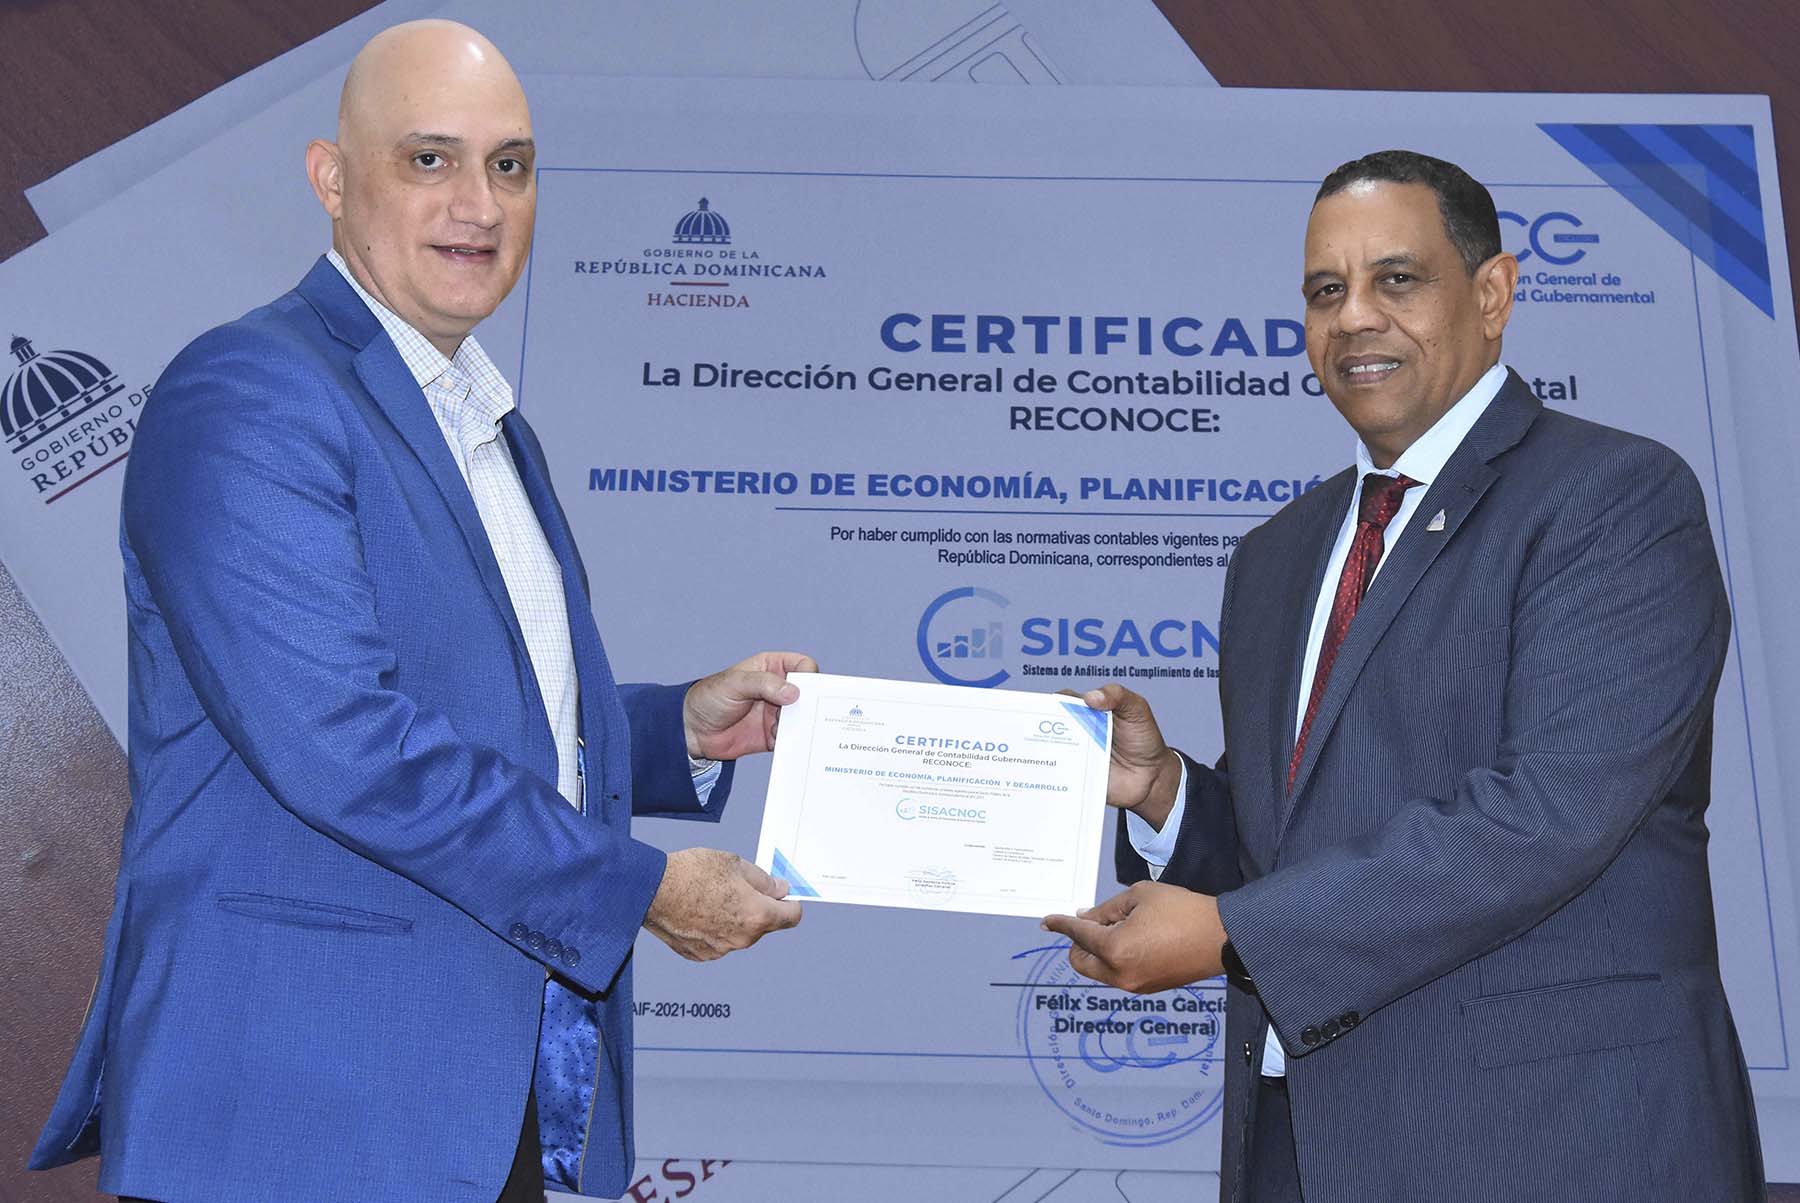 Pável Isa Contreras, ministro de Economía, Planificación y Desarrollo, recibe certificado de la DIGECOG de manos de Yamel Valera Castillo, viceministro Administrativo y Financiero del Ministerio de Economía.